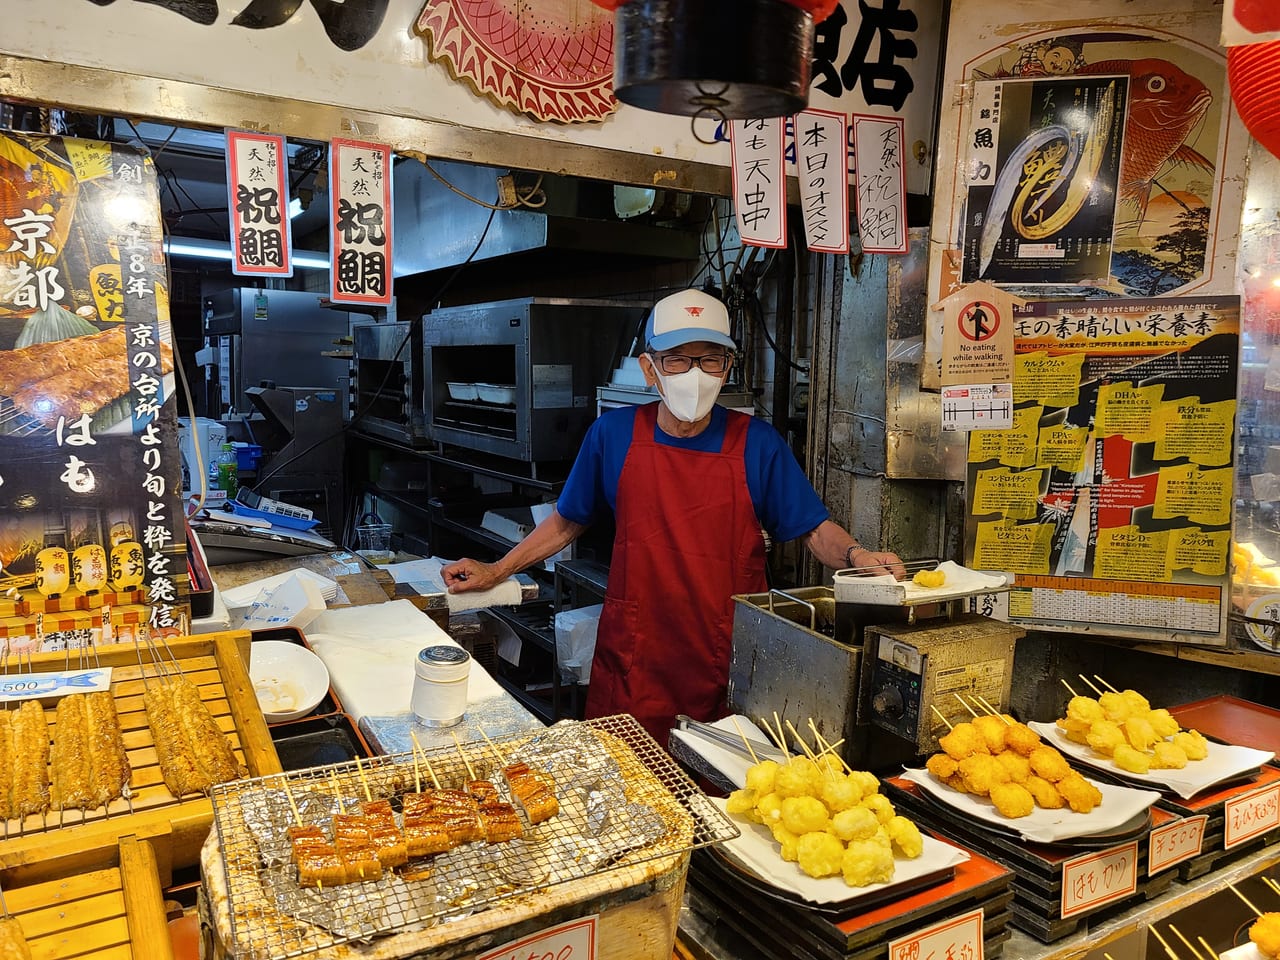 京の台所と言われる錦市場